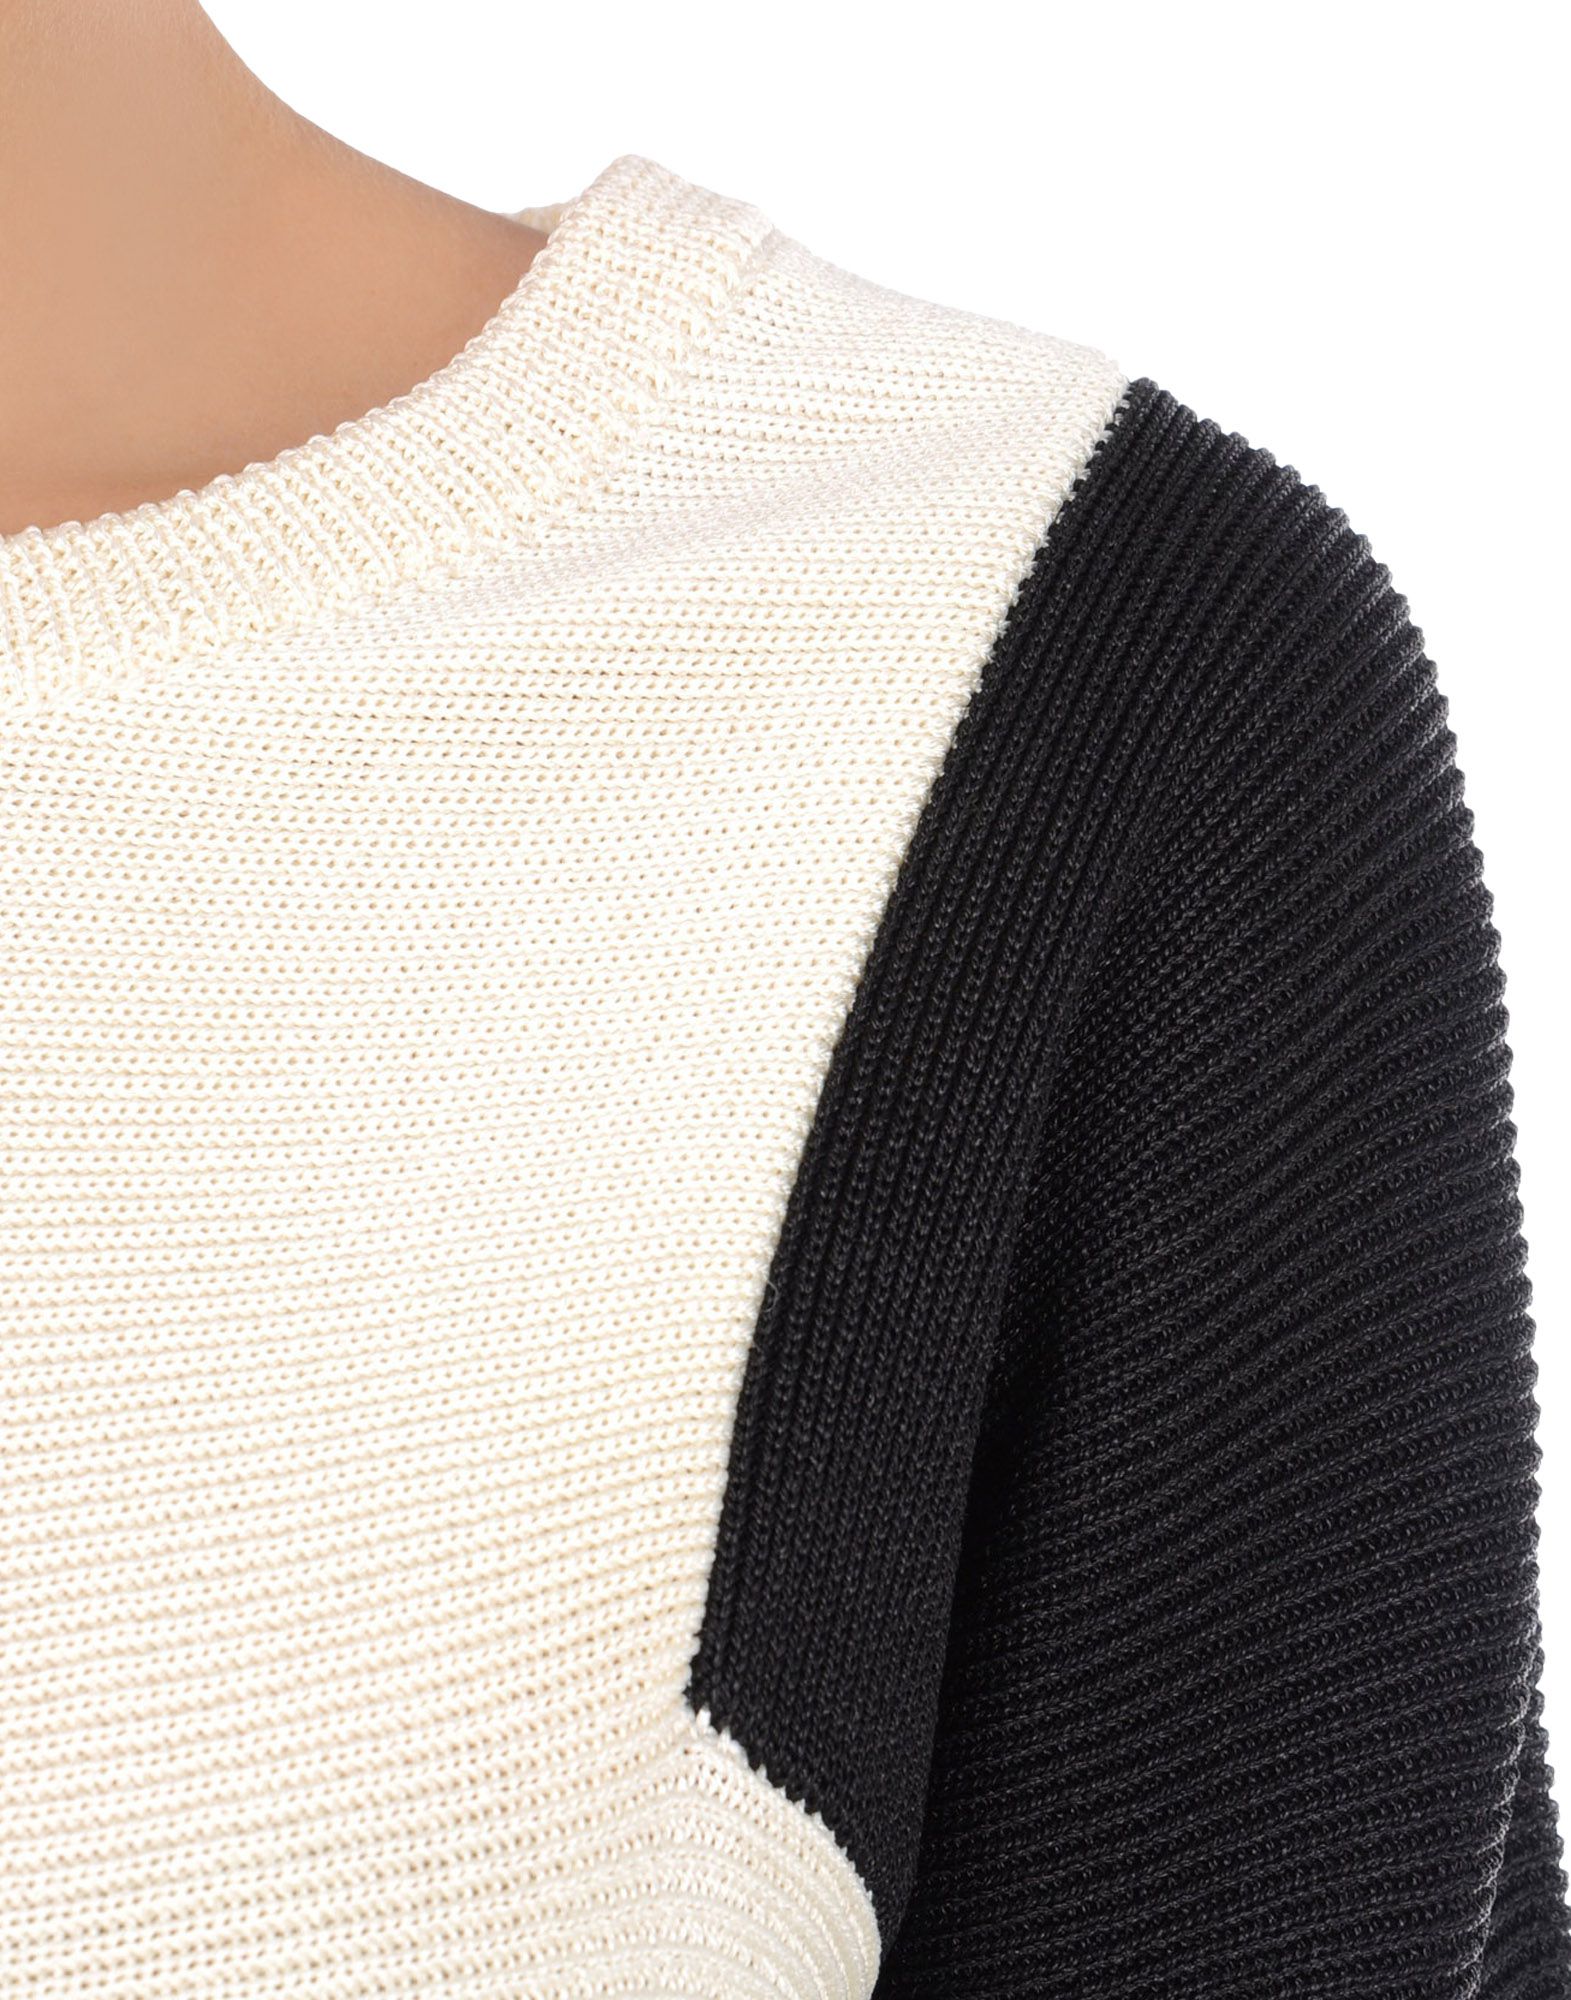 Sweater Women - Knitwear Women on Jil Sander Online Store